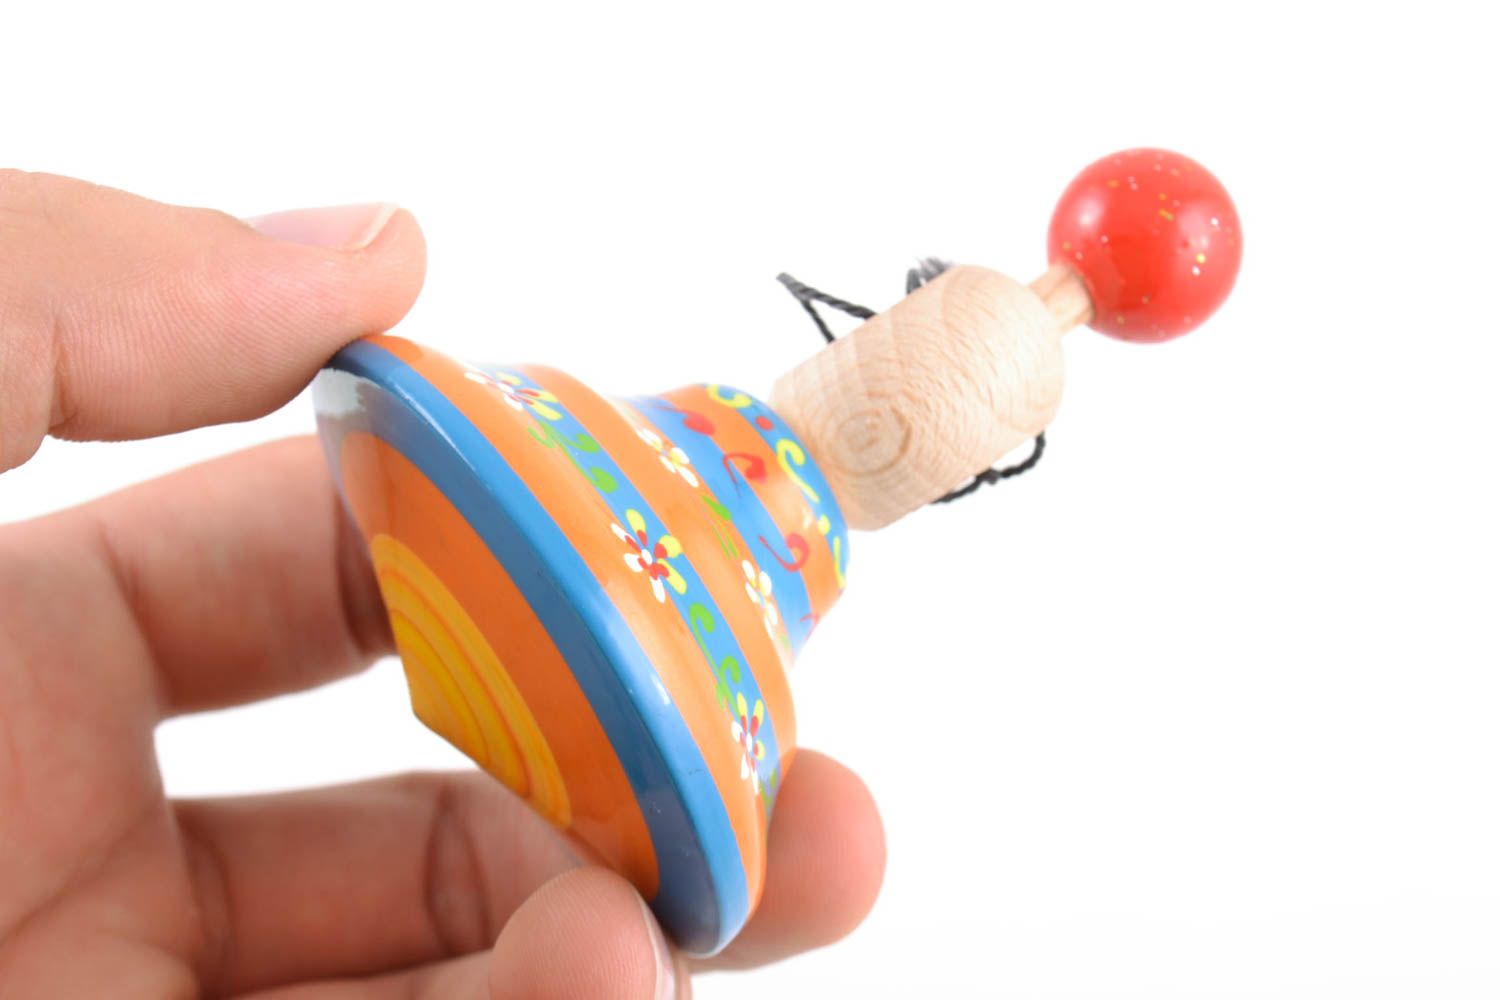 Handmade Kreisel Spielzeug aus Holz mit Ökofarben bemalt gestreift foto 2